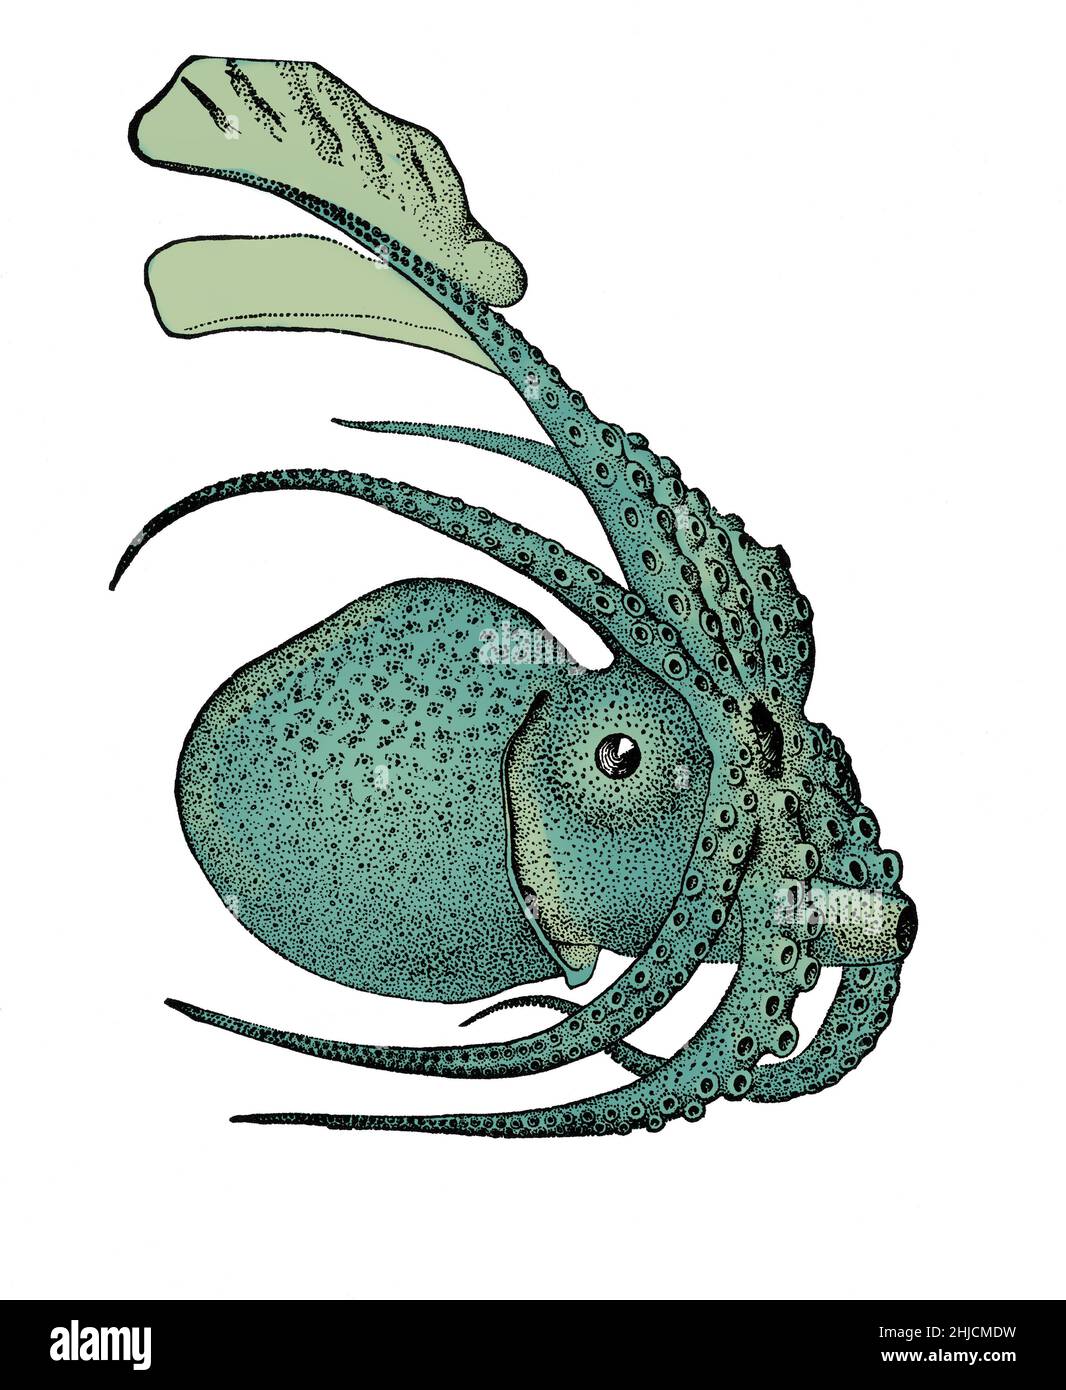 Argonauta argo es una especie de pulpo pelágico perteneciente al género Argonauta. Argonauta argo es cosmopolita y se encuentra en aguas tropicales y subtropicales de todo el mundo. Color mejorado. Foto de stock